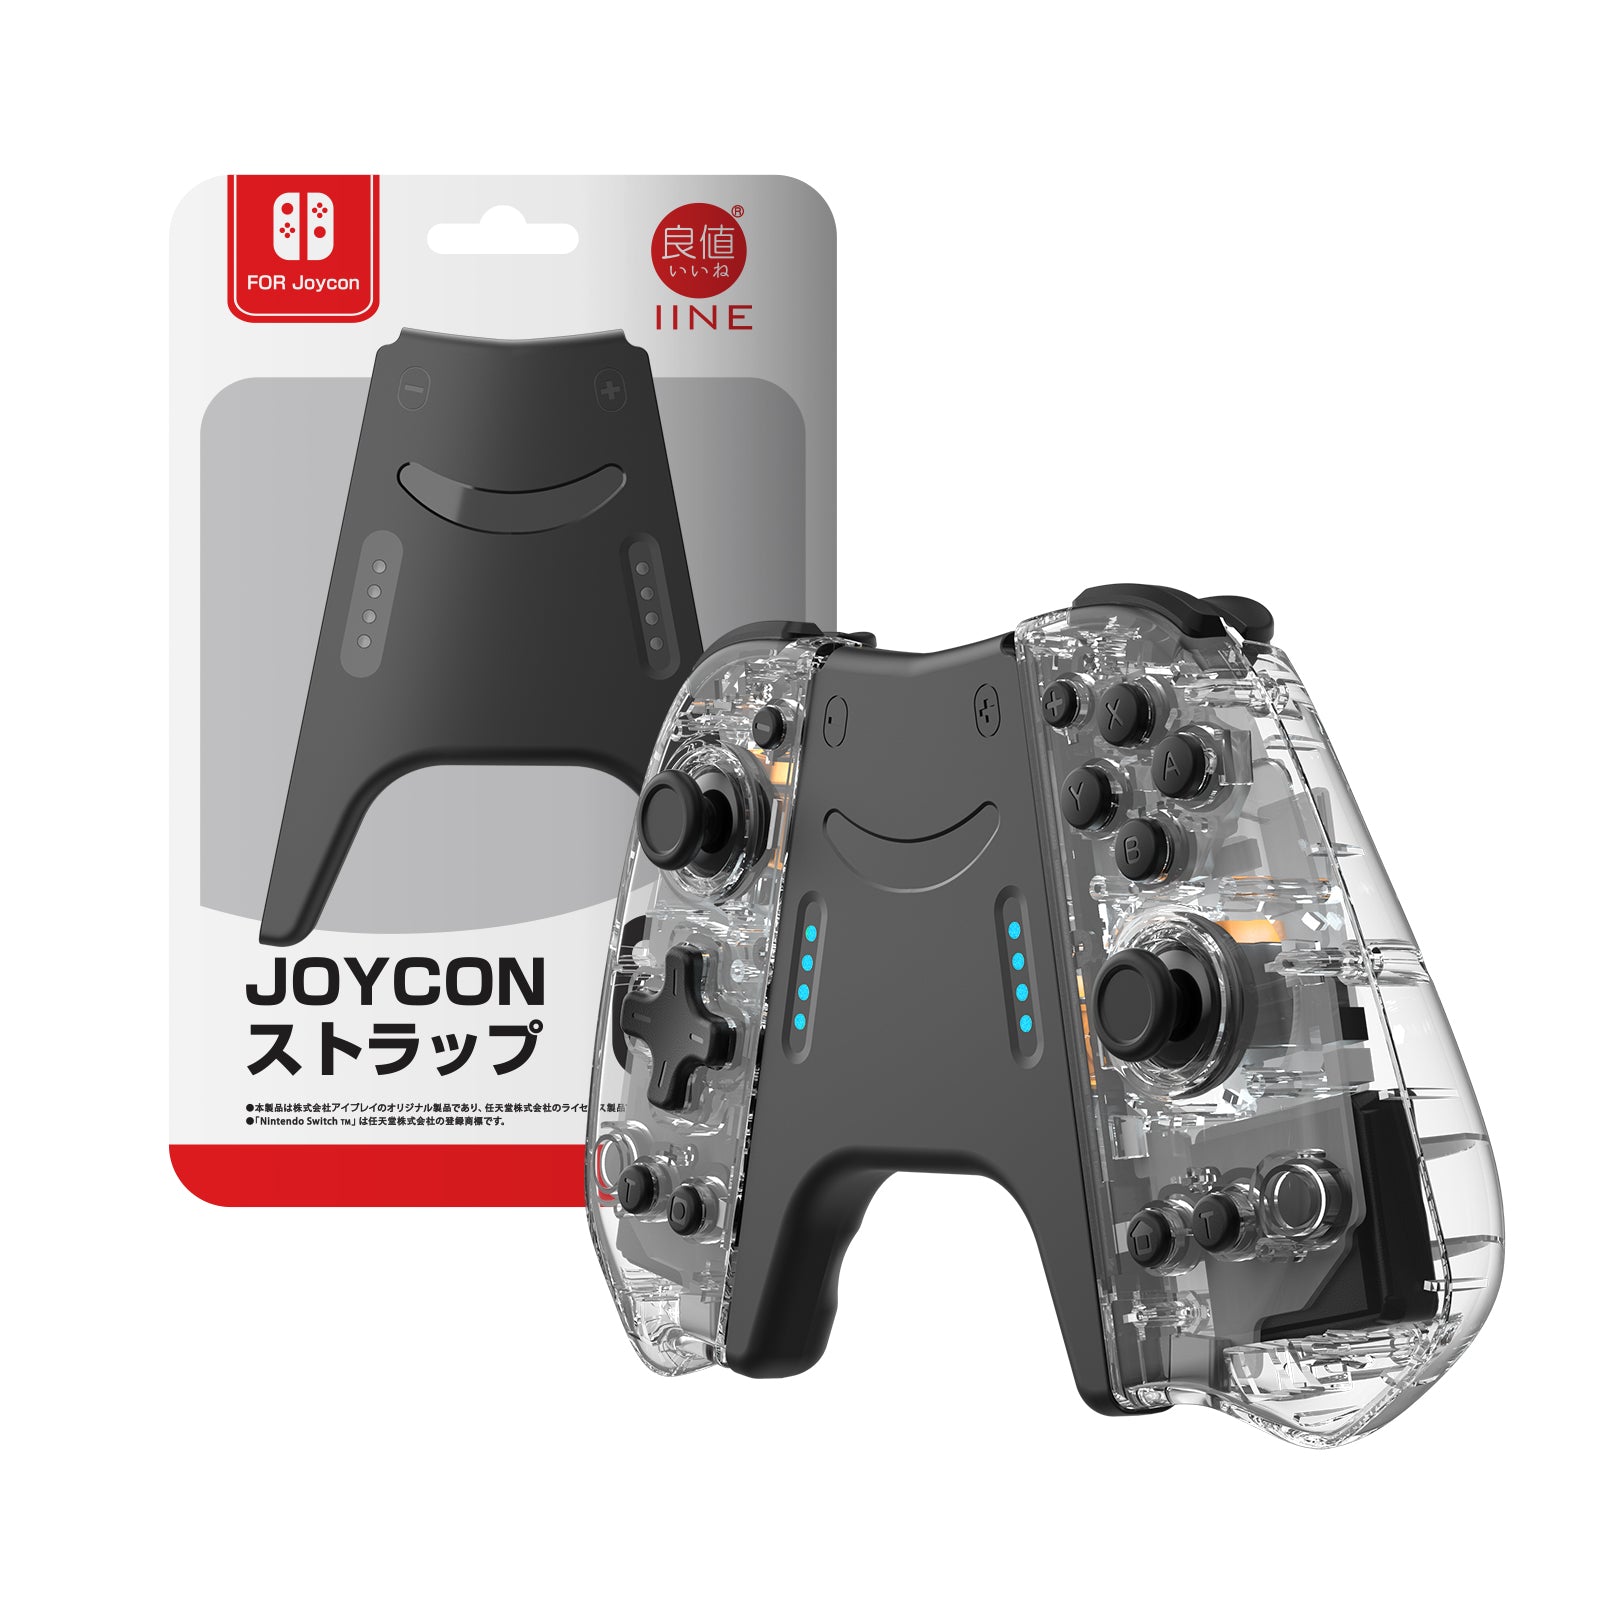 IINE Nintendo Store Switch IINE – Official Joypad Elite